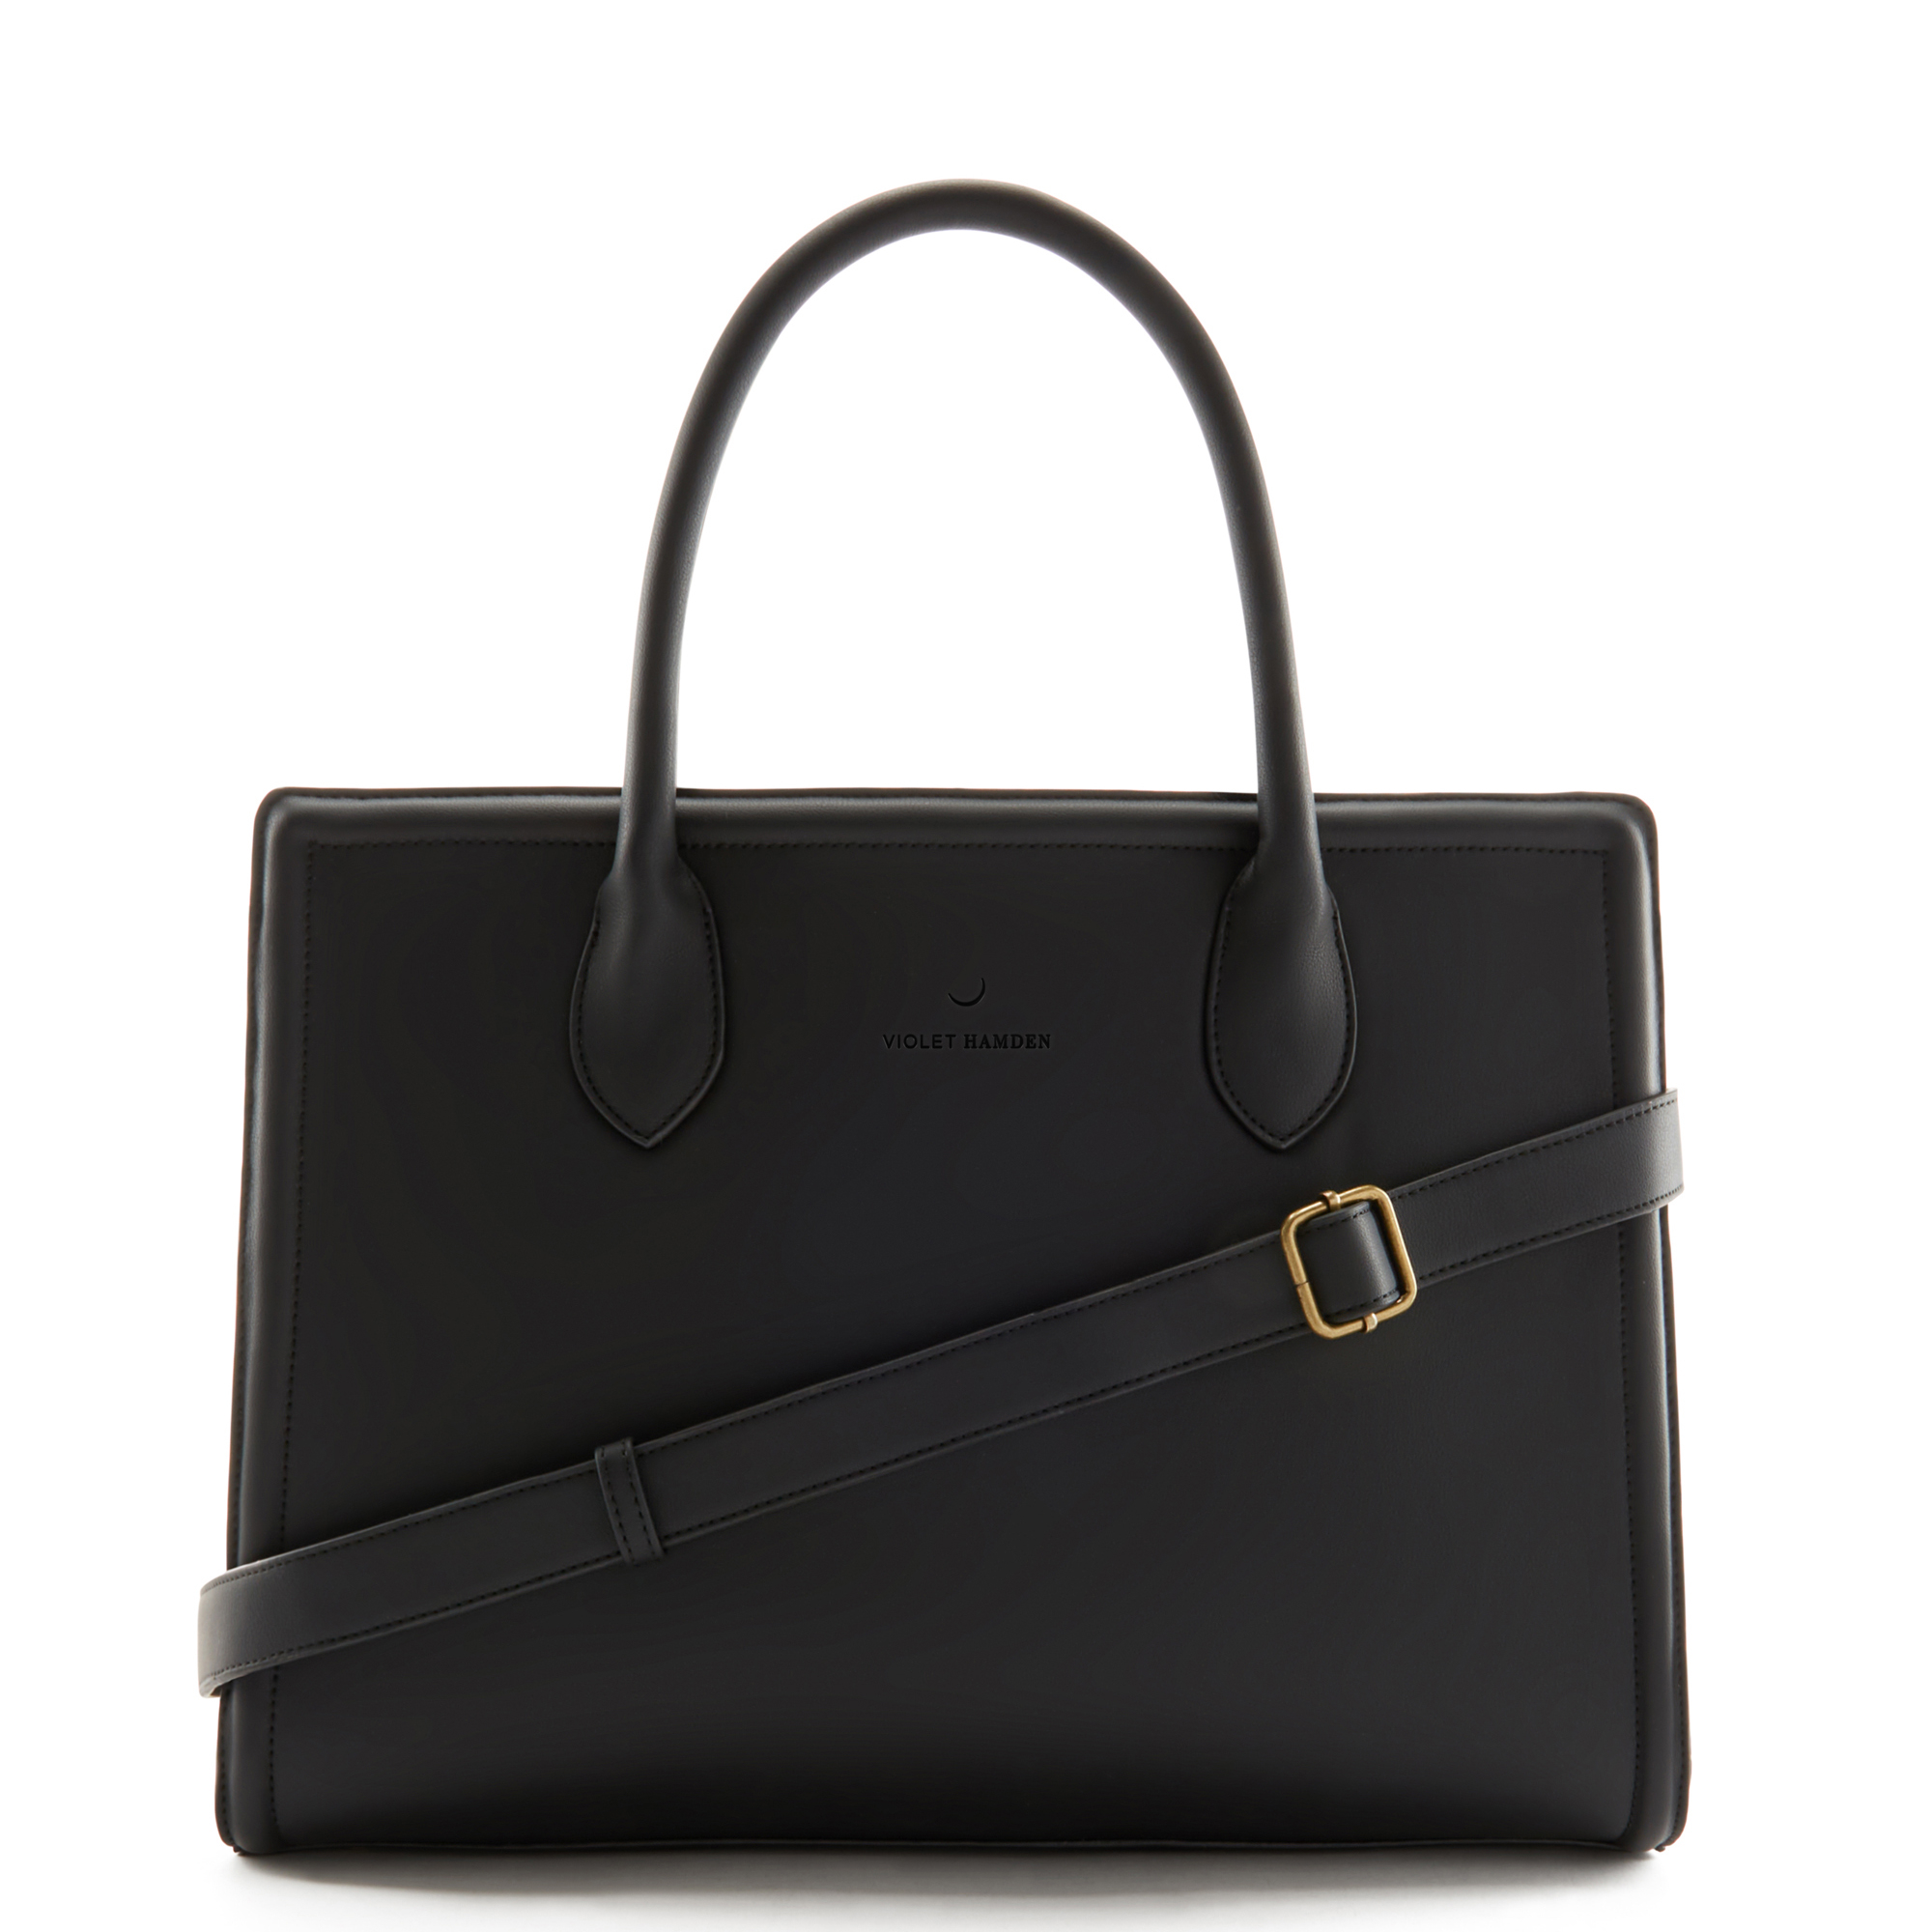 Violet Hamden Essential Bag Black Shopper VH25017